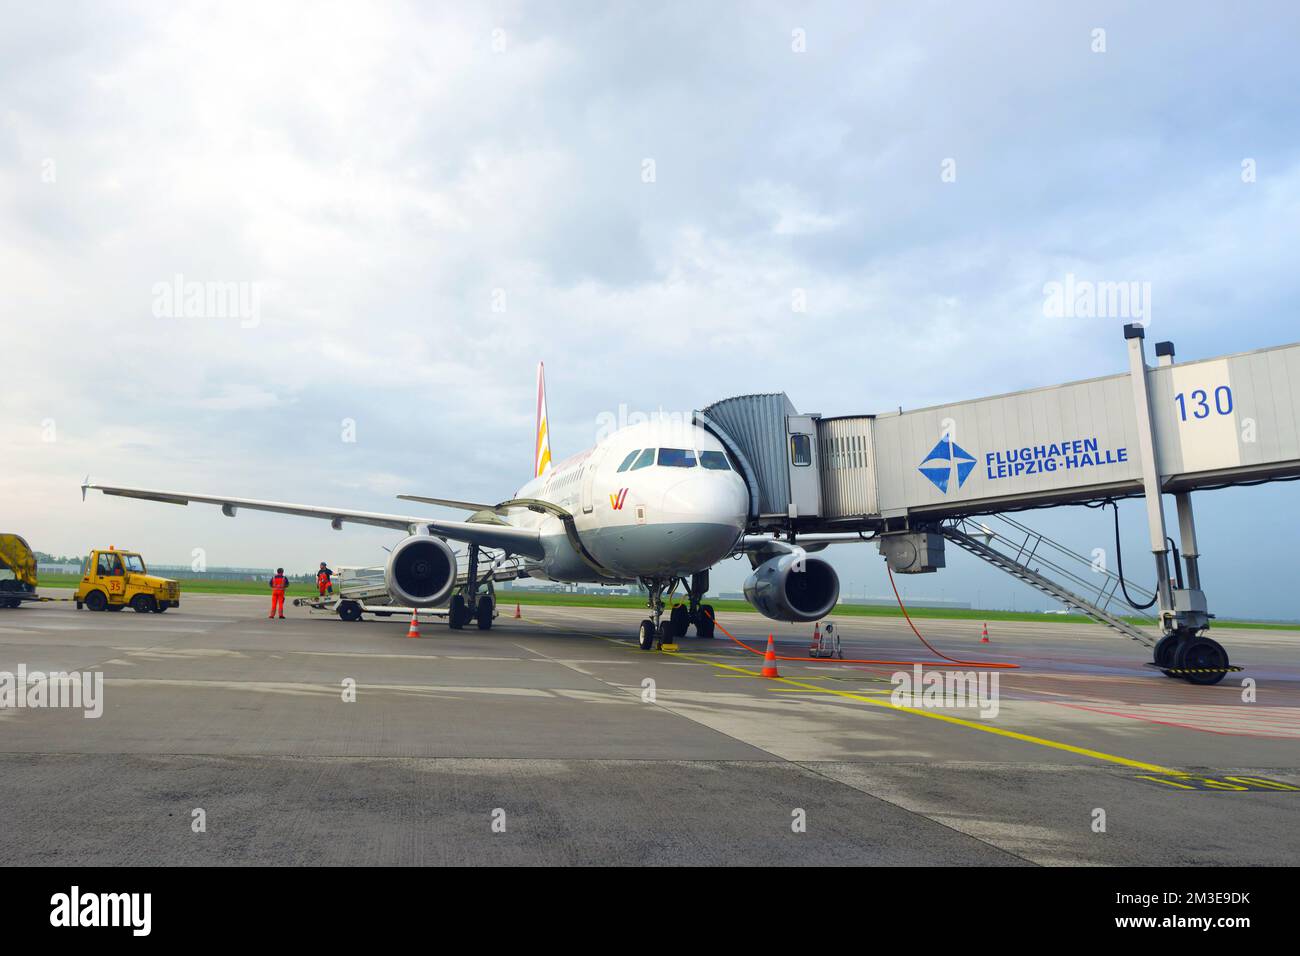 LEIPZIG, ALEMANIA - SEP 11: Avión a reacción Germanwings atracado el 11 de septiembre de 2014. Germanwings GmbH es una aerolínea alemana de bajo coste con sede en Colonia, WHIC Foto de stock